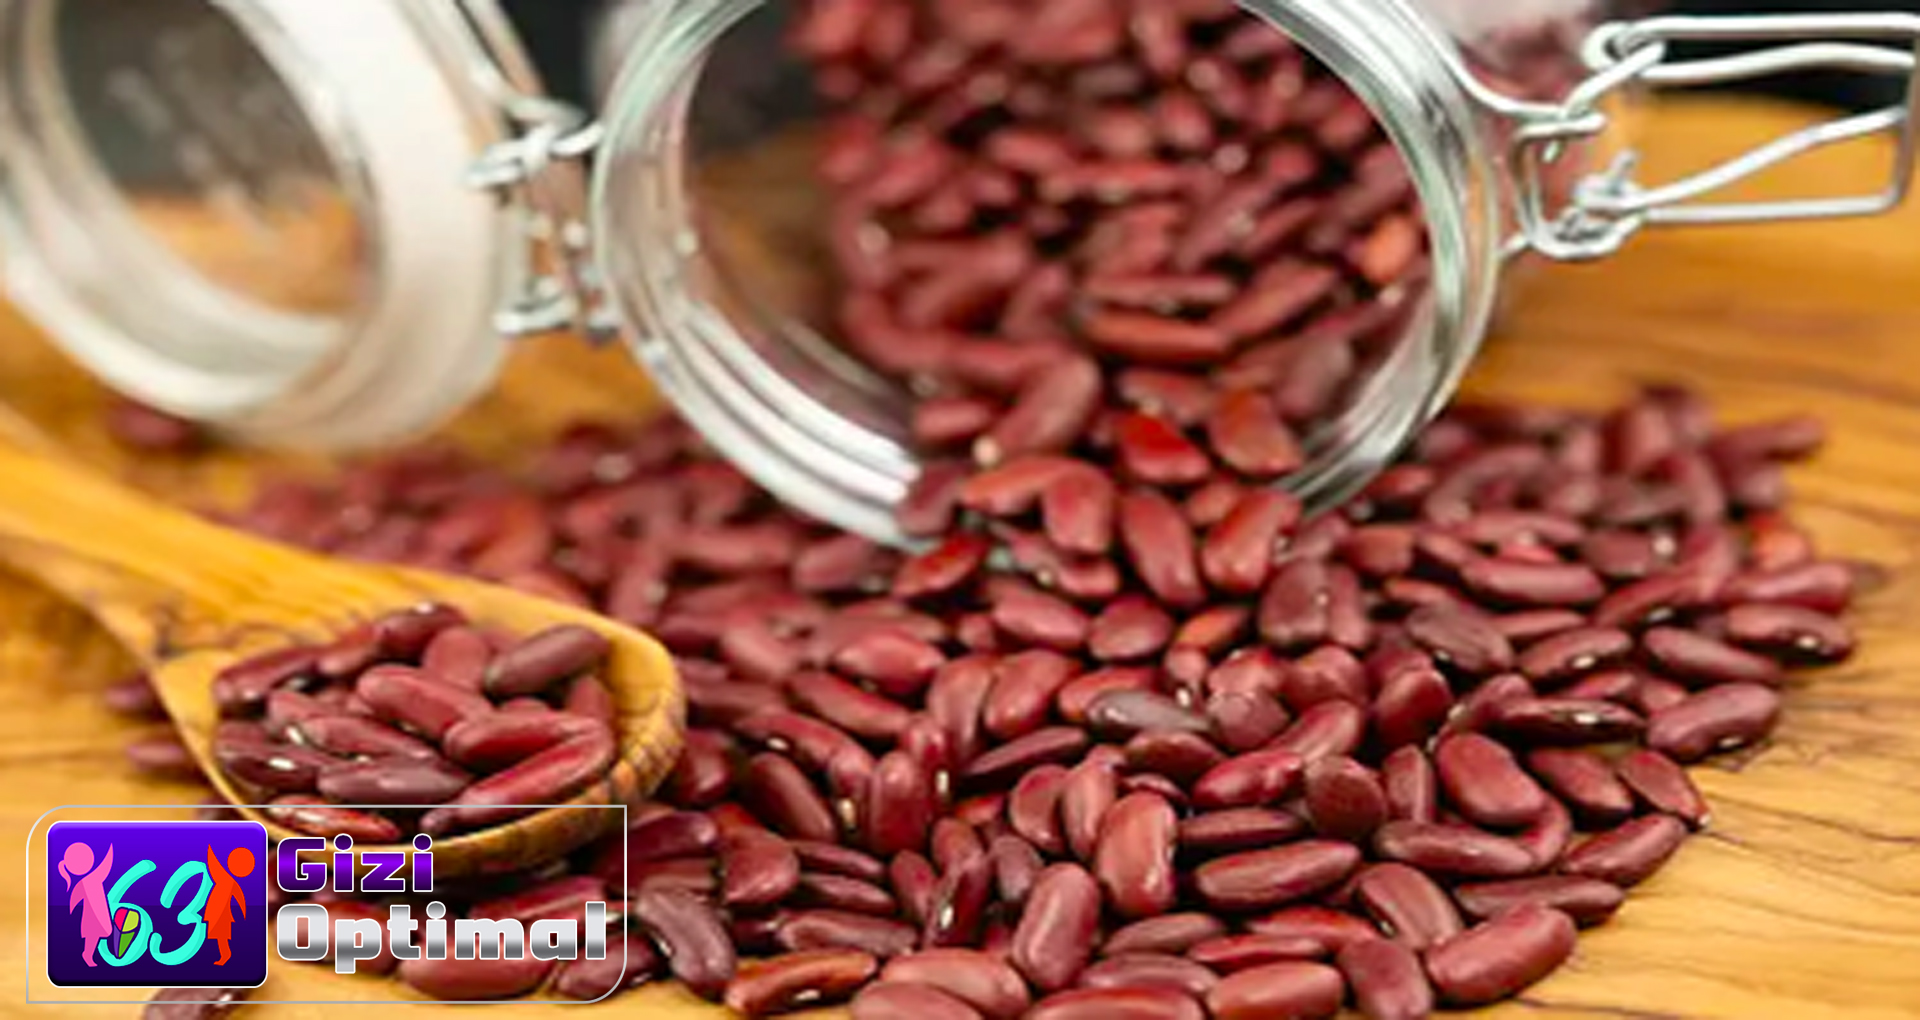 Manfaat Kacang Merah bagi Kesehatan Tubuh